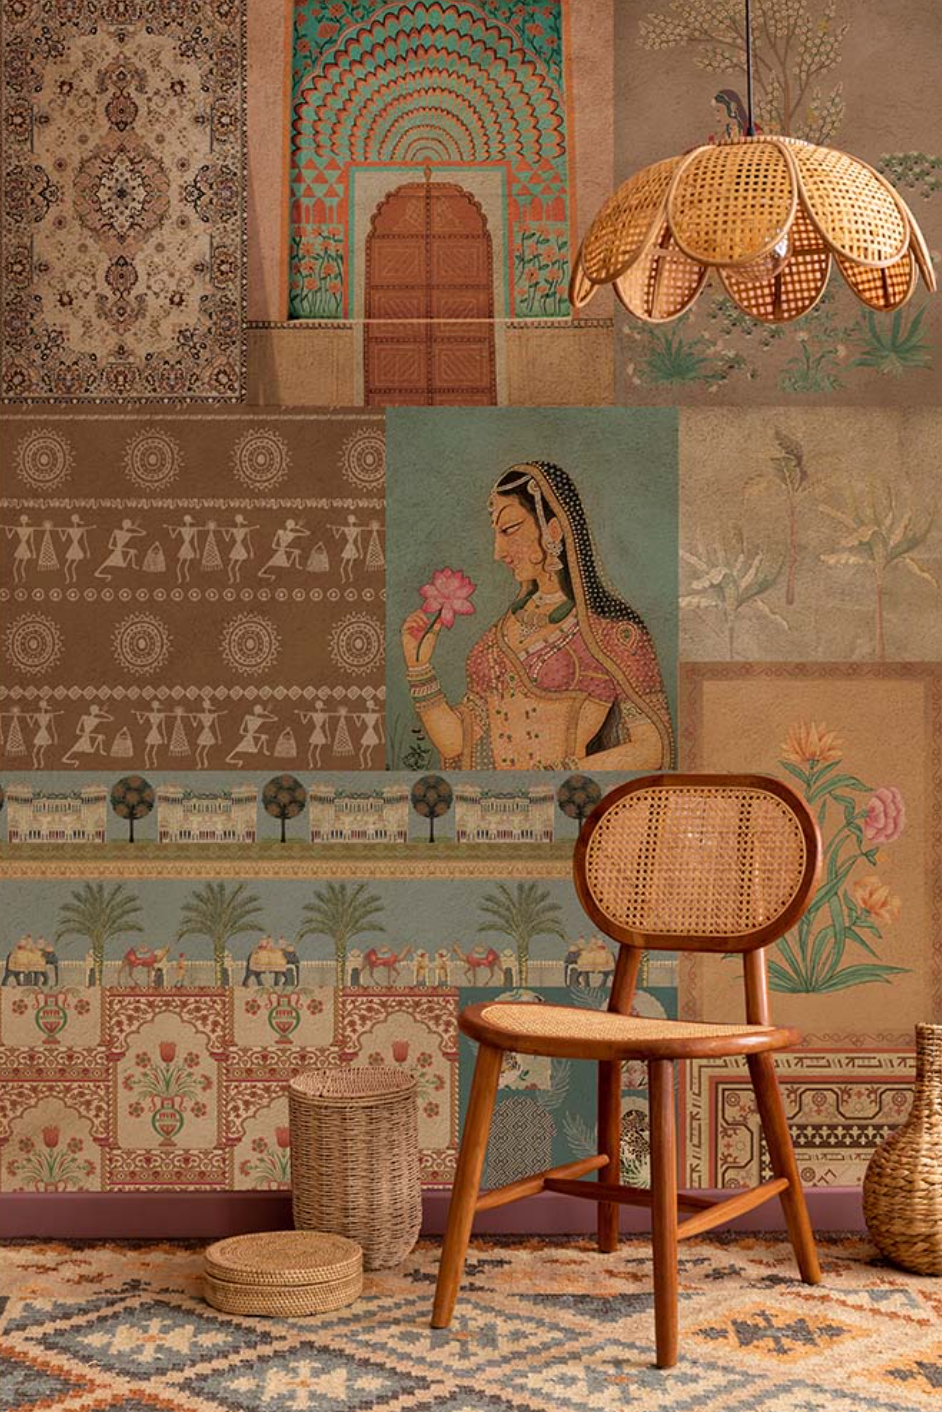 'Begum' Wallpaper